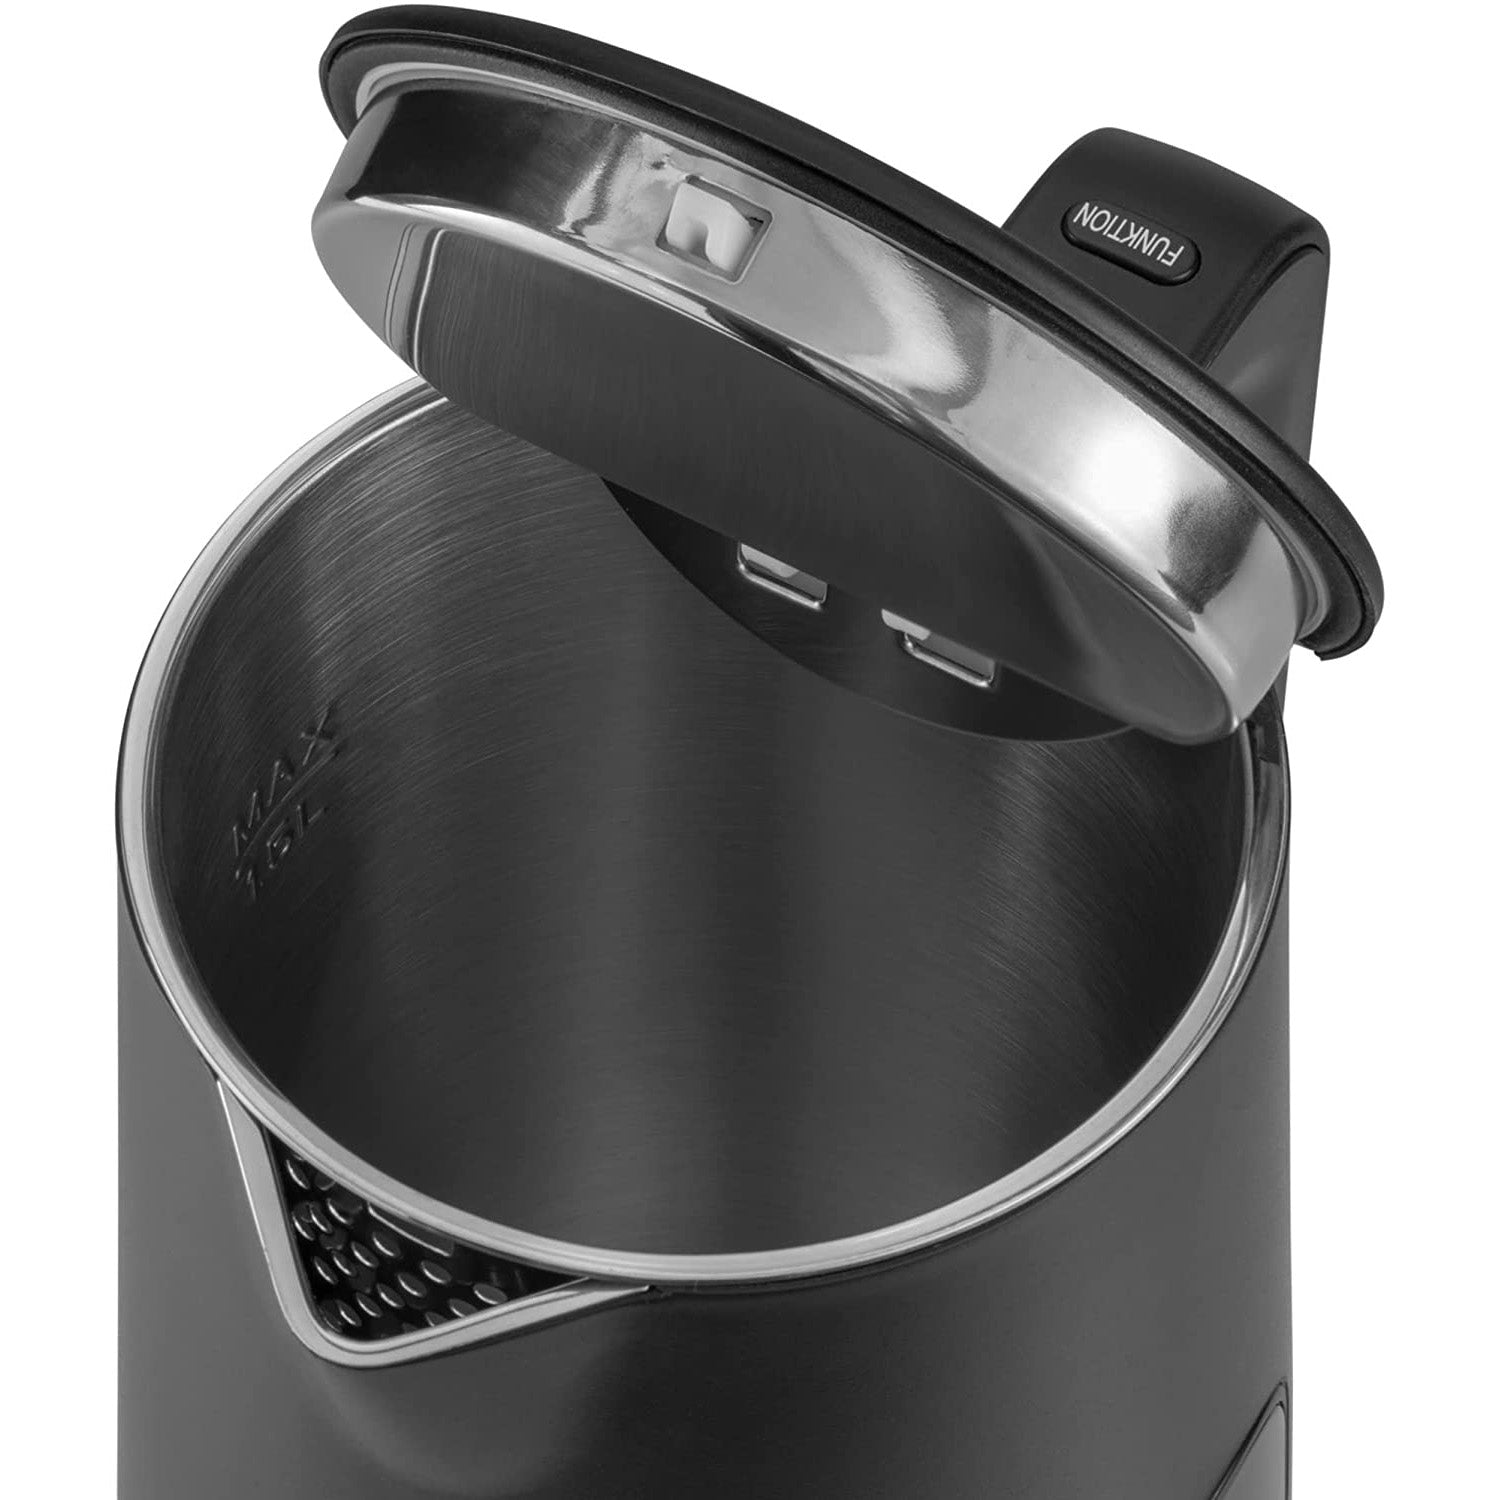 KLAMER Wasserkocher Wasserkocher, 1.5 Schwarz Liter